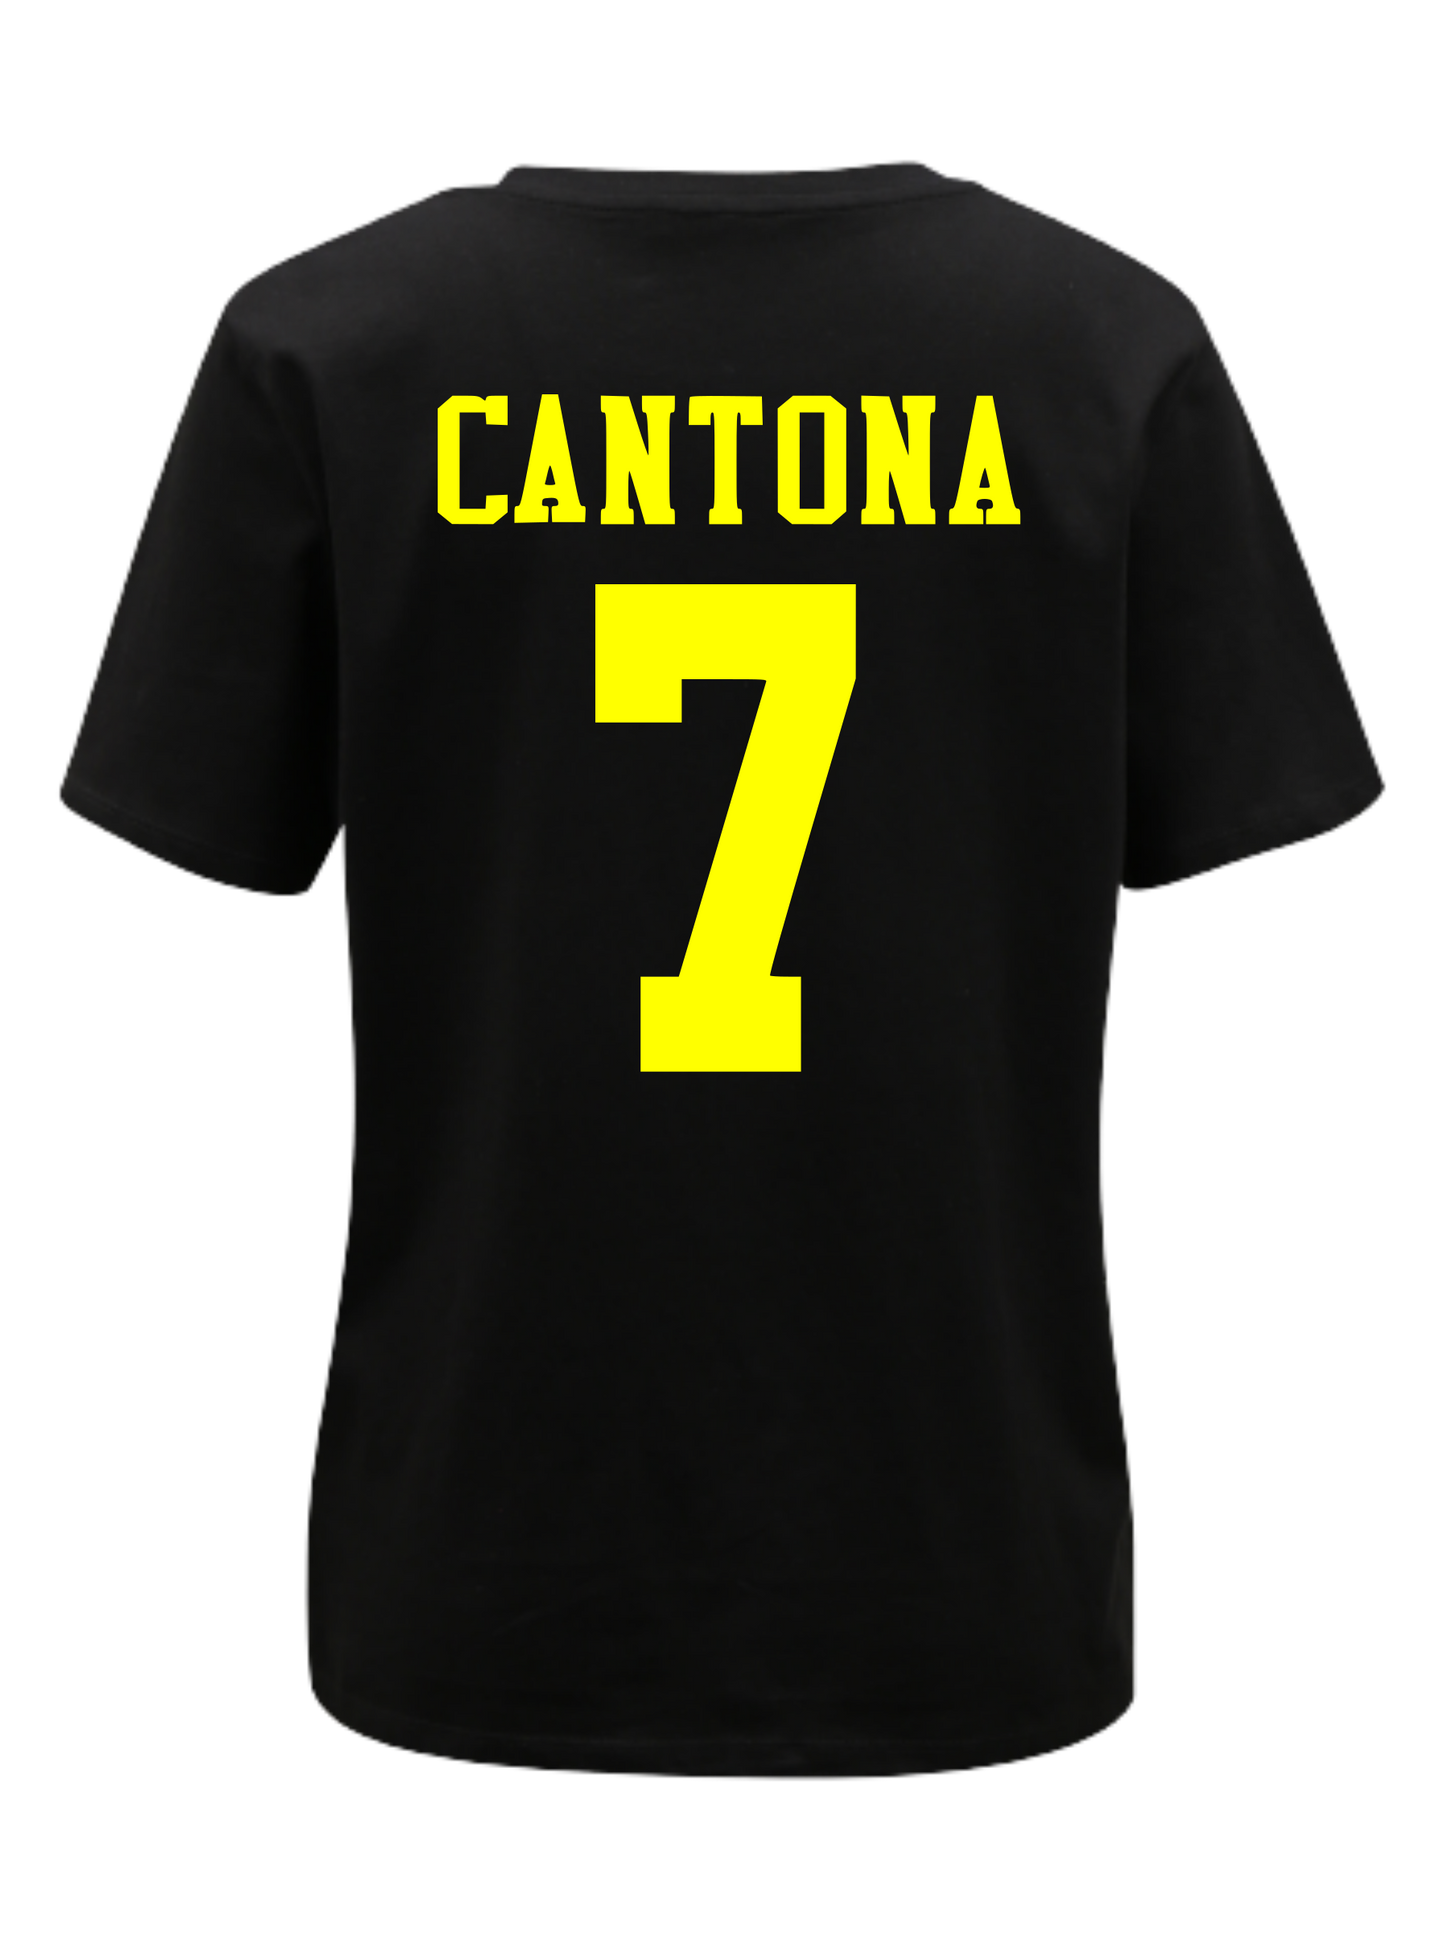 Cantona 7 with kung fu Hooligan kick print - back and front printed T-Shirt. Kids